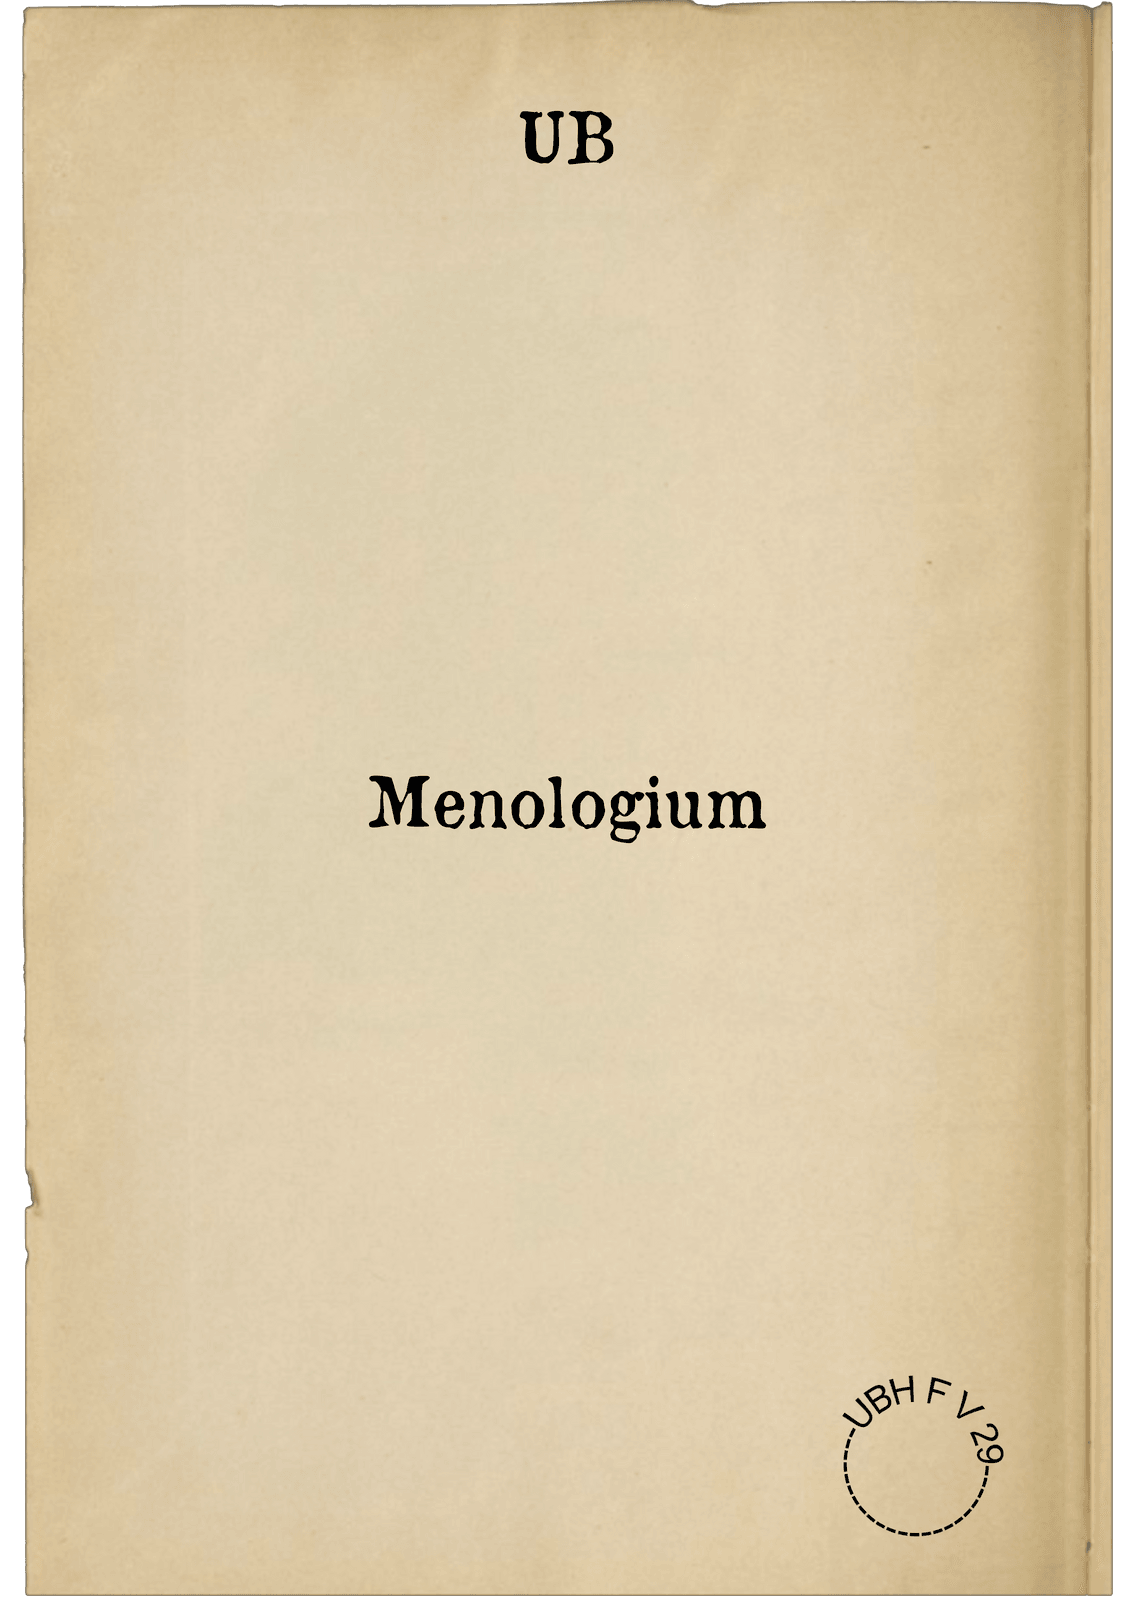 Menologium